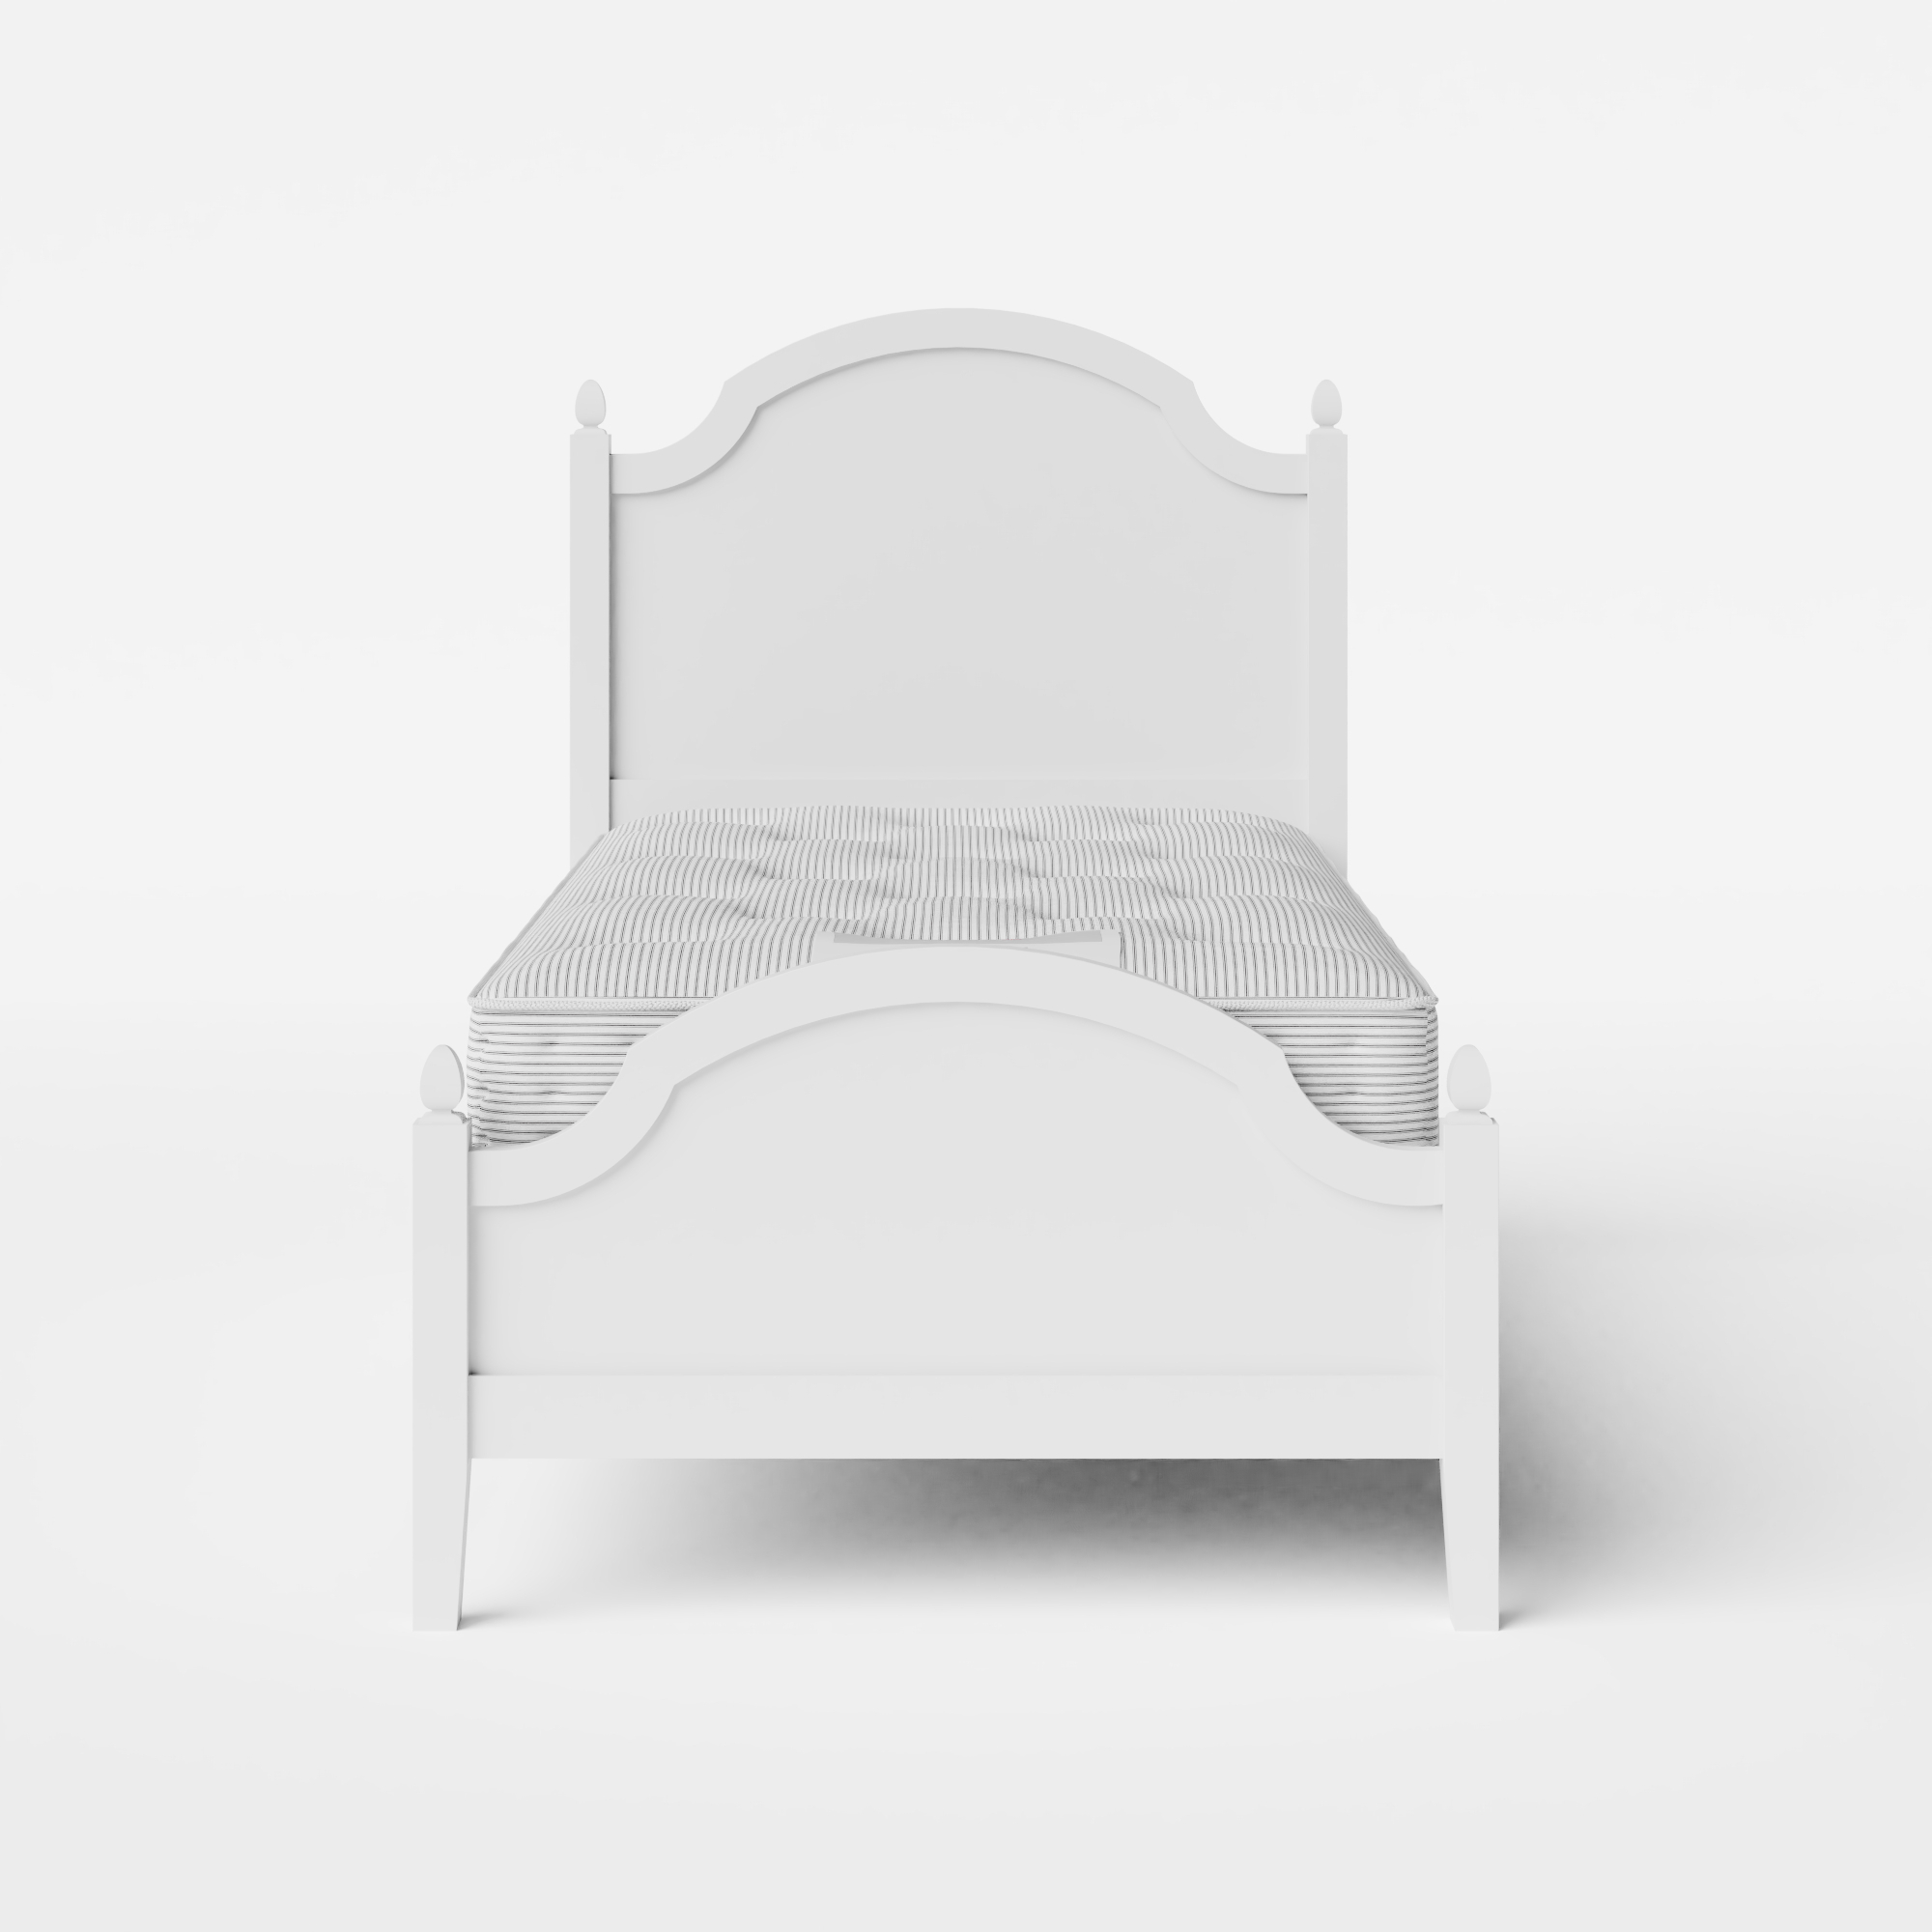 Kipling Low Footend Painted cama individual de madera pintada en blanco con colchón